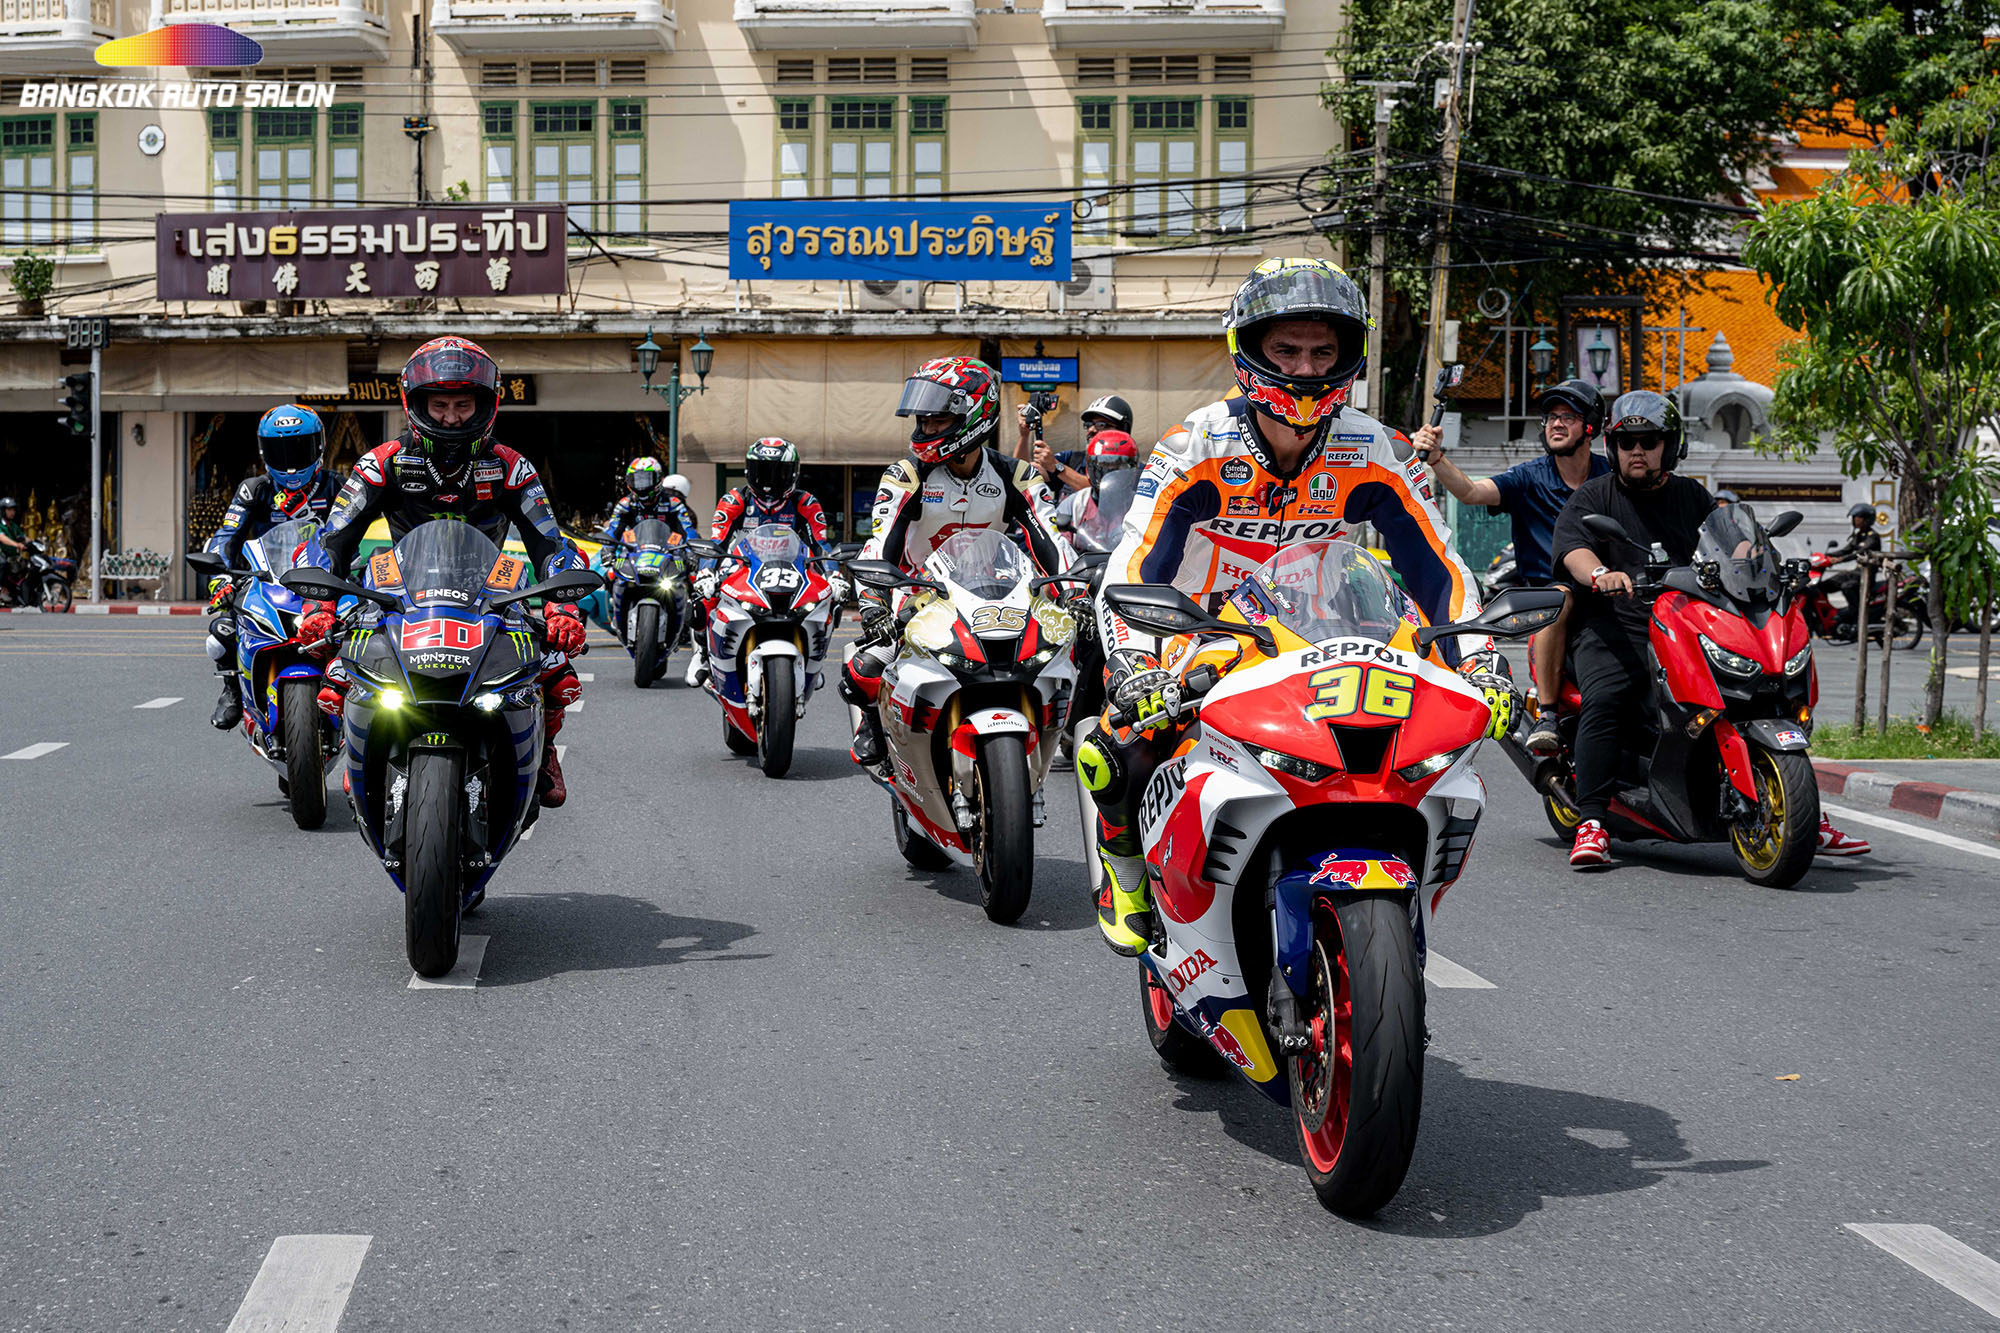 ดอร์น่าสปอร์ต ยกกองถ่ายบุกเกาะรัตนโกสินทร์ เตรียมเปิดฉาก MotoGP สนามประเทศไทย 27-29 ต.ค.นี้